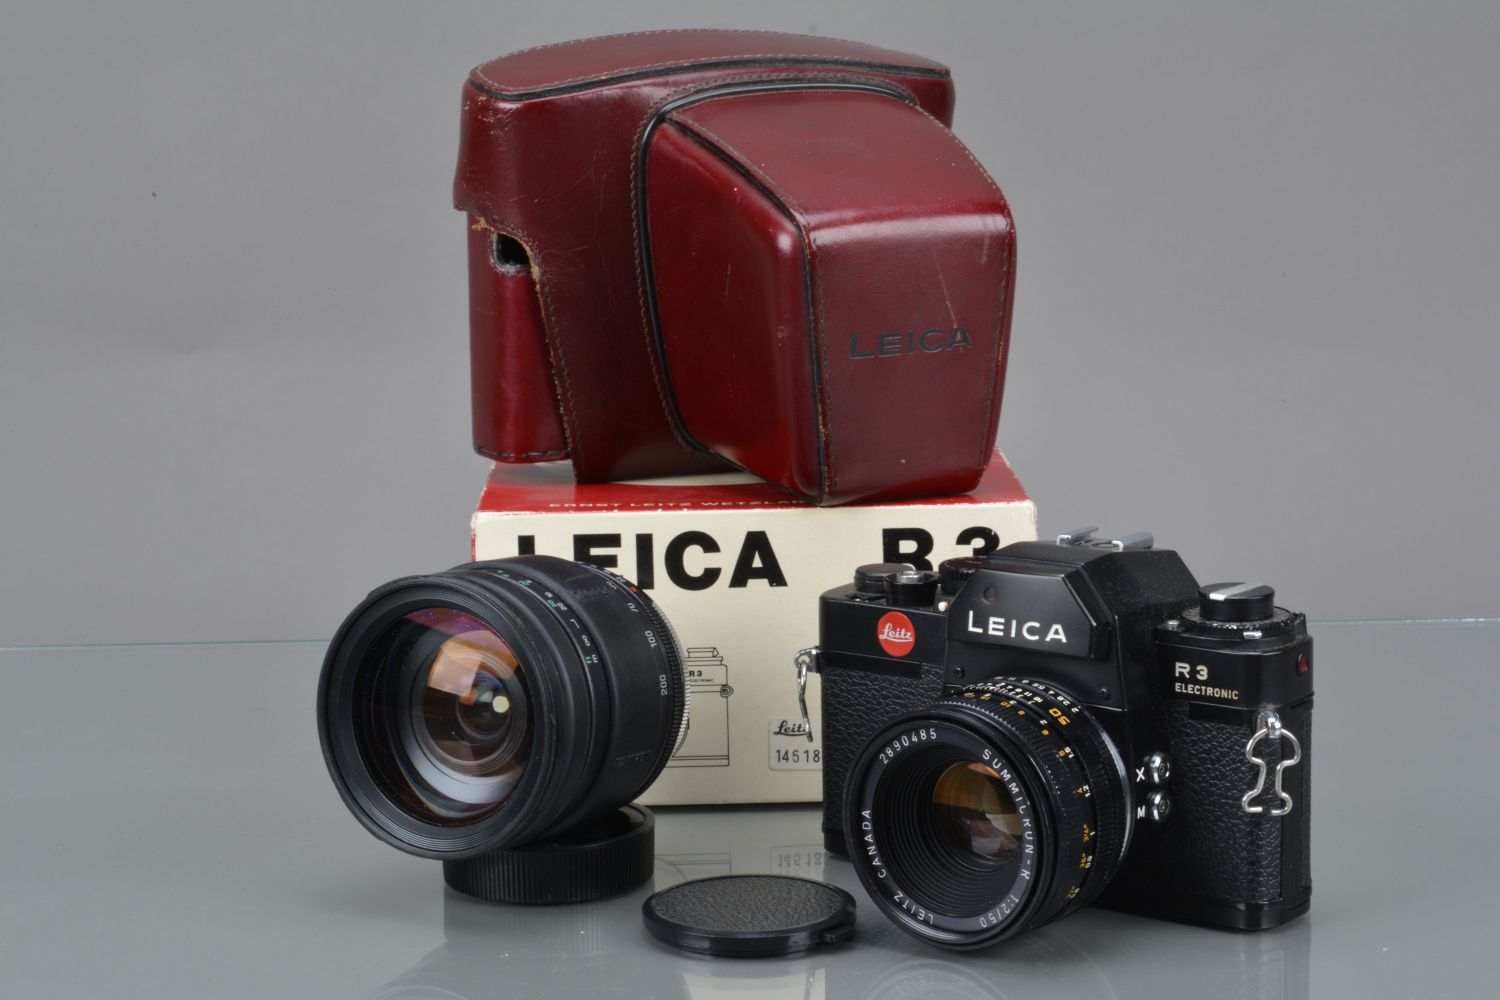 Photographica & Cameras Auction